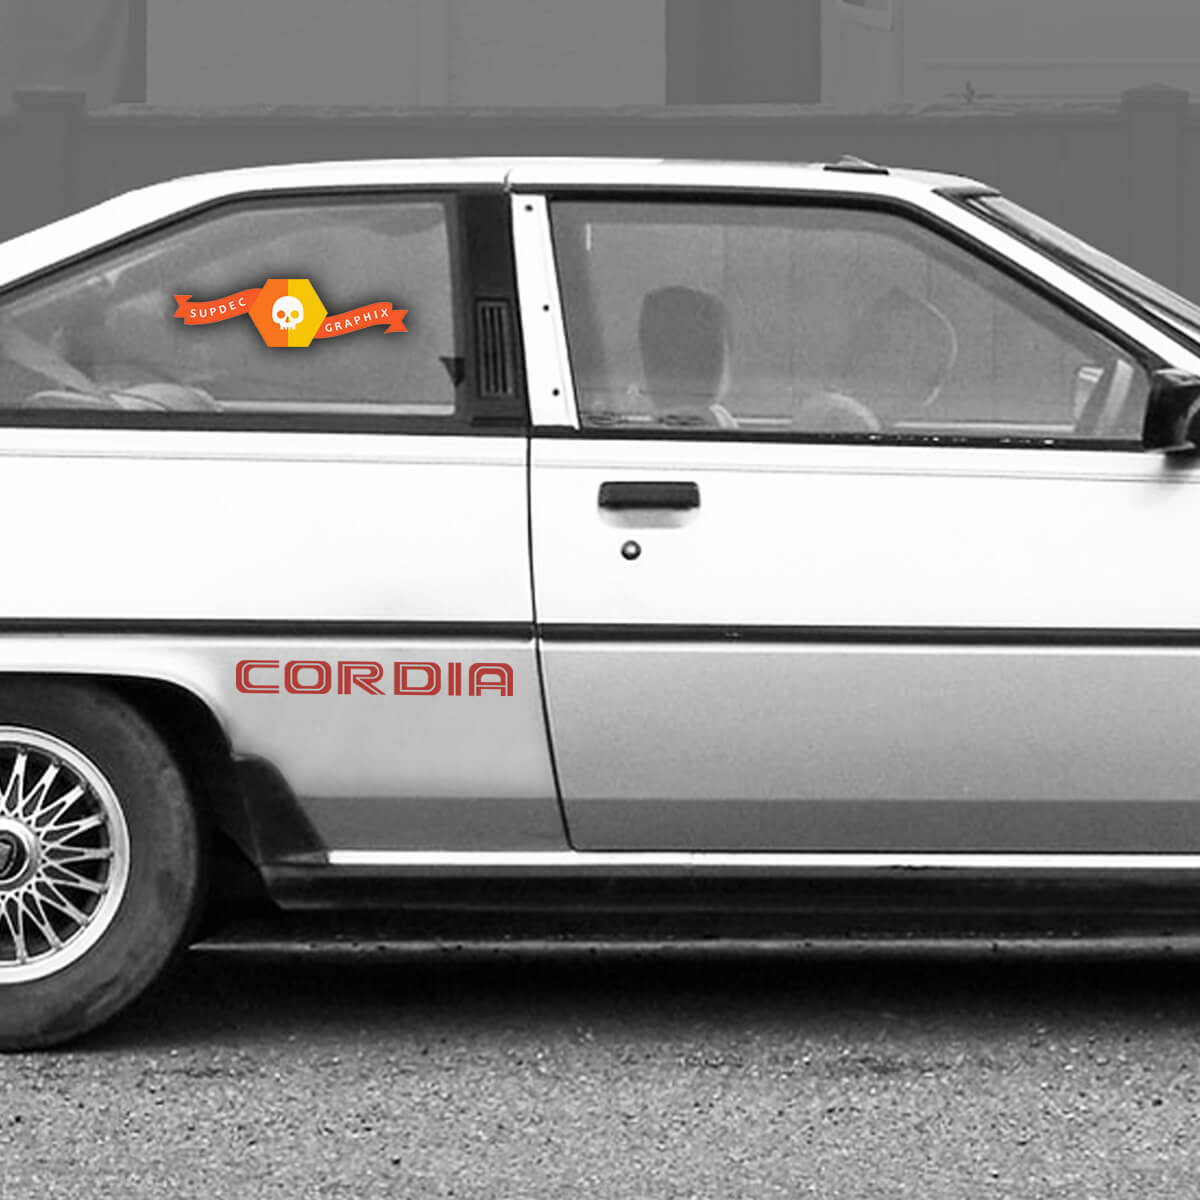 Coppia Mitsubishi Cordia Turbo CORDIA decalcomanie laterali in vinile decalcomanie grafiche adesive 2 colori
